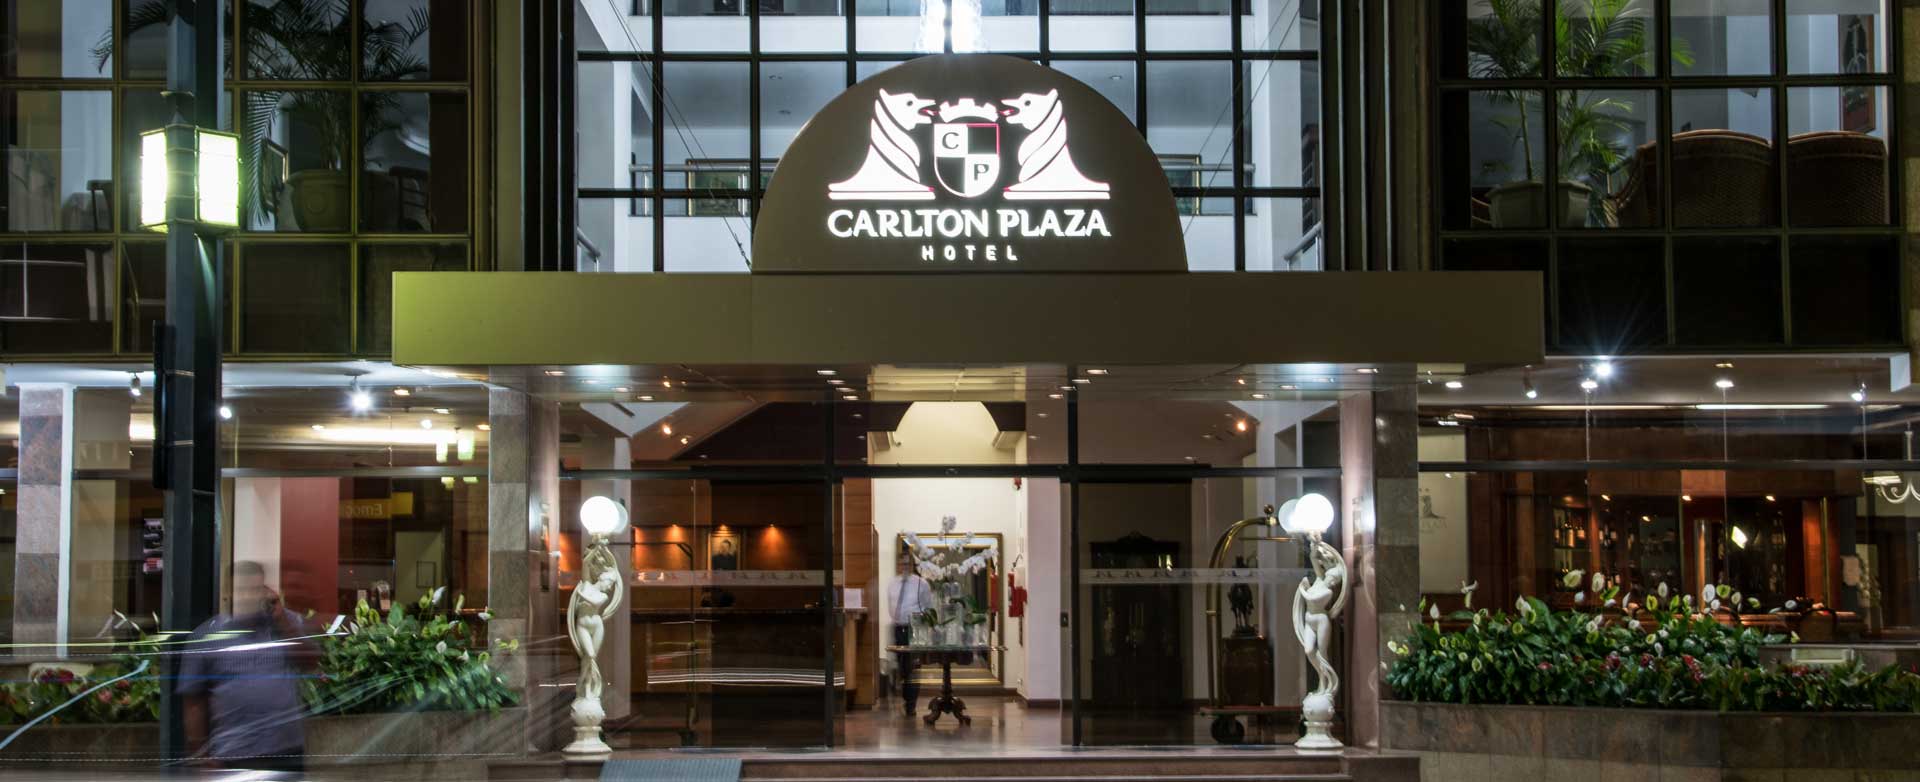 HOTEL CARLTON PLAZA POÇOS DE CALDAS